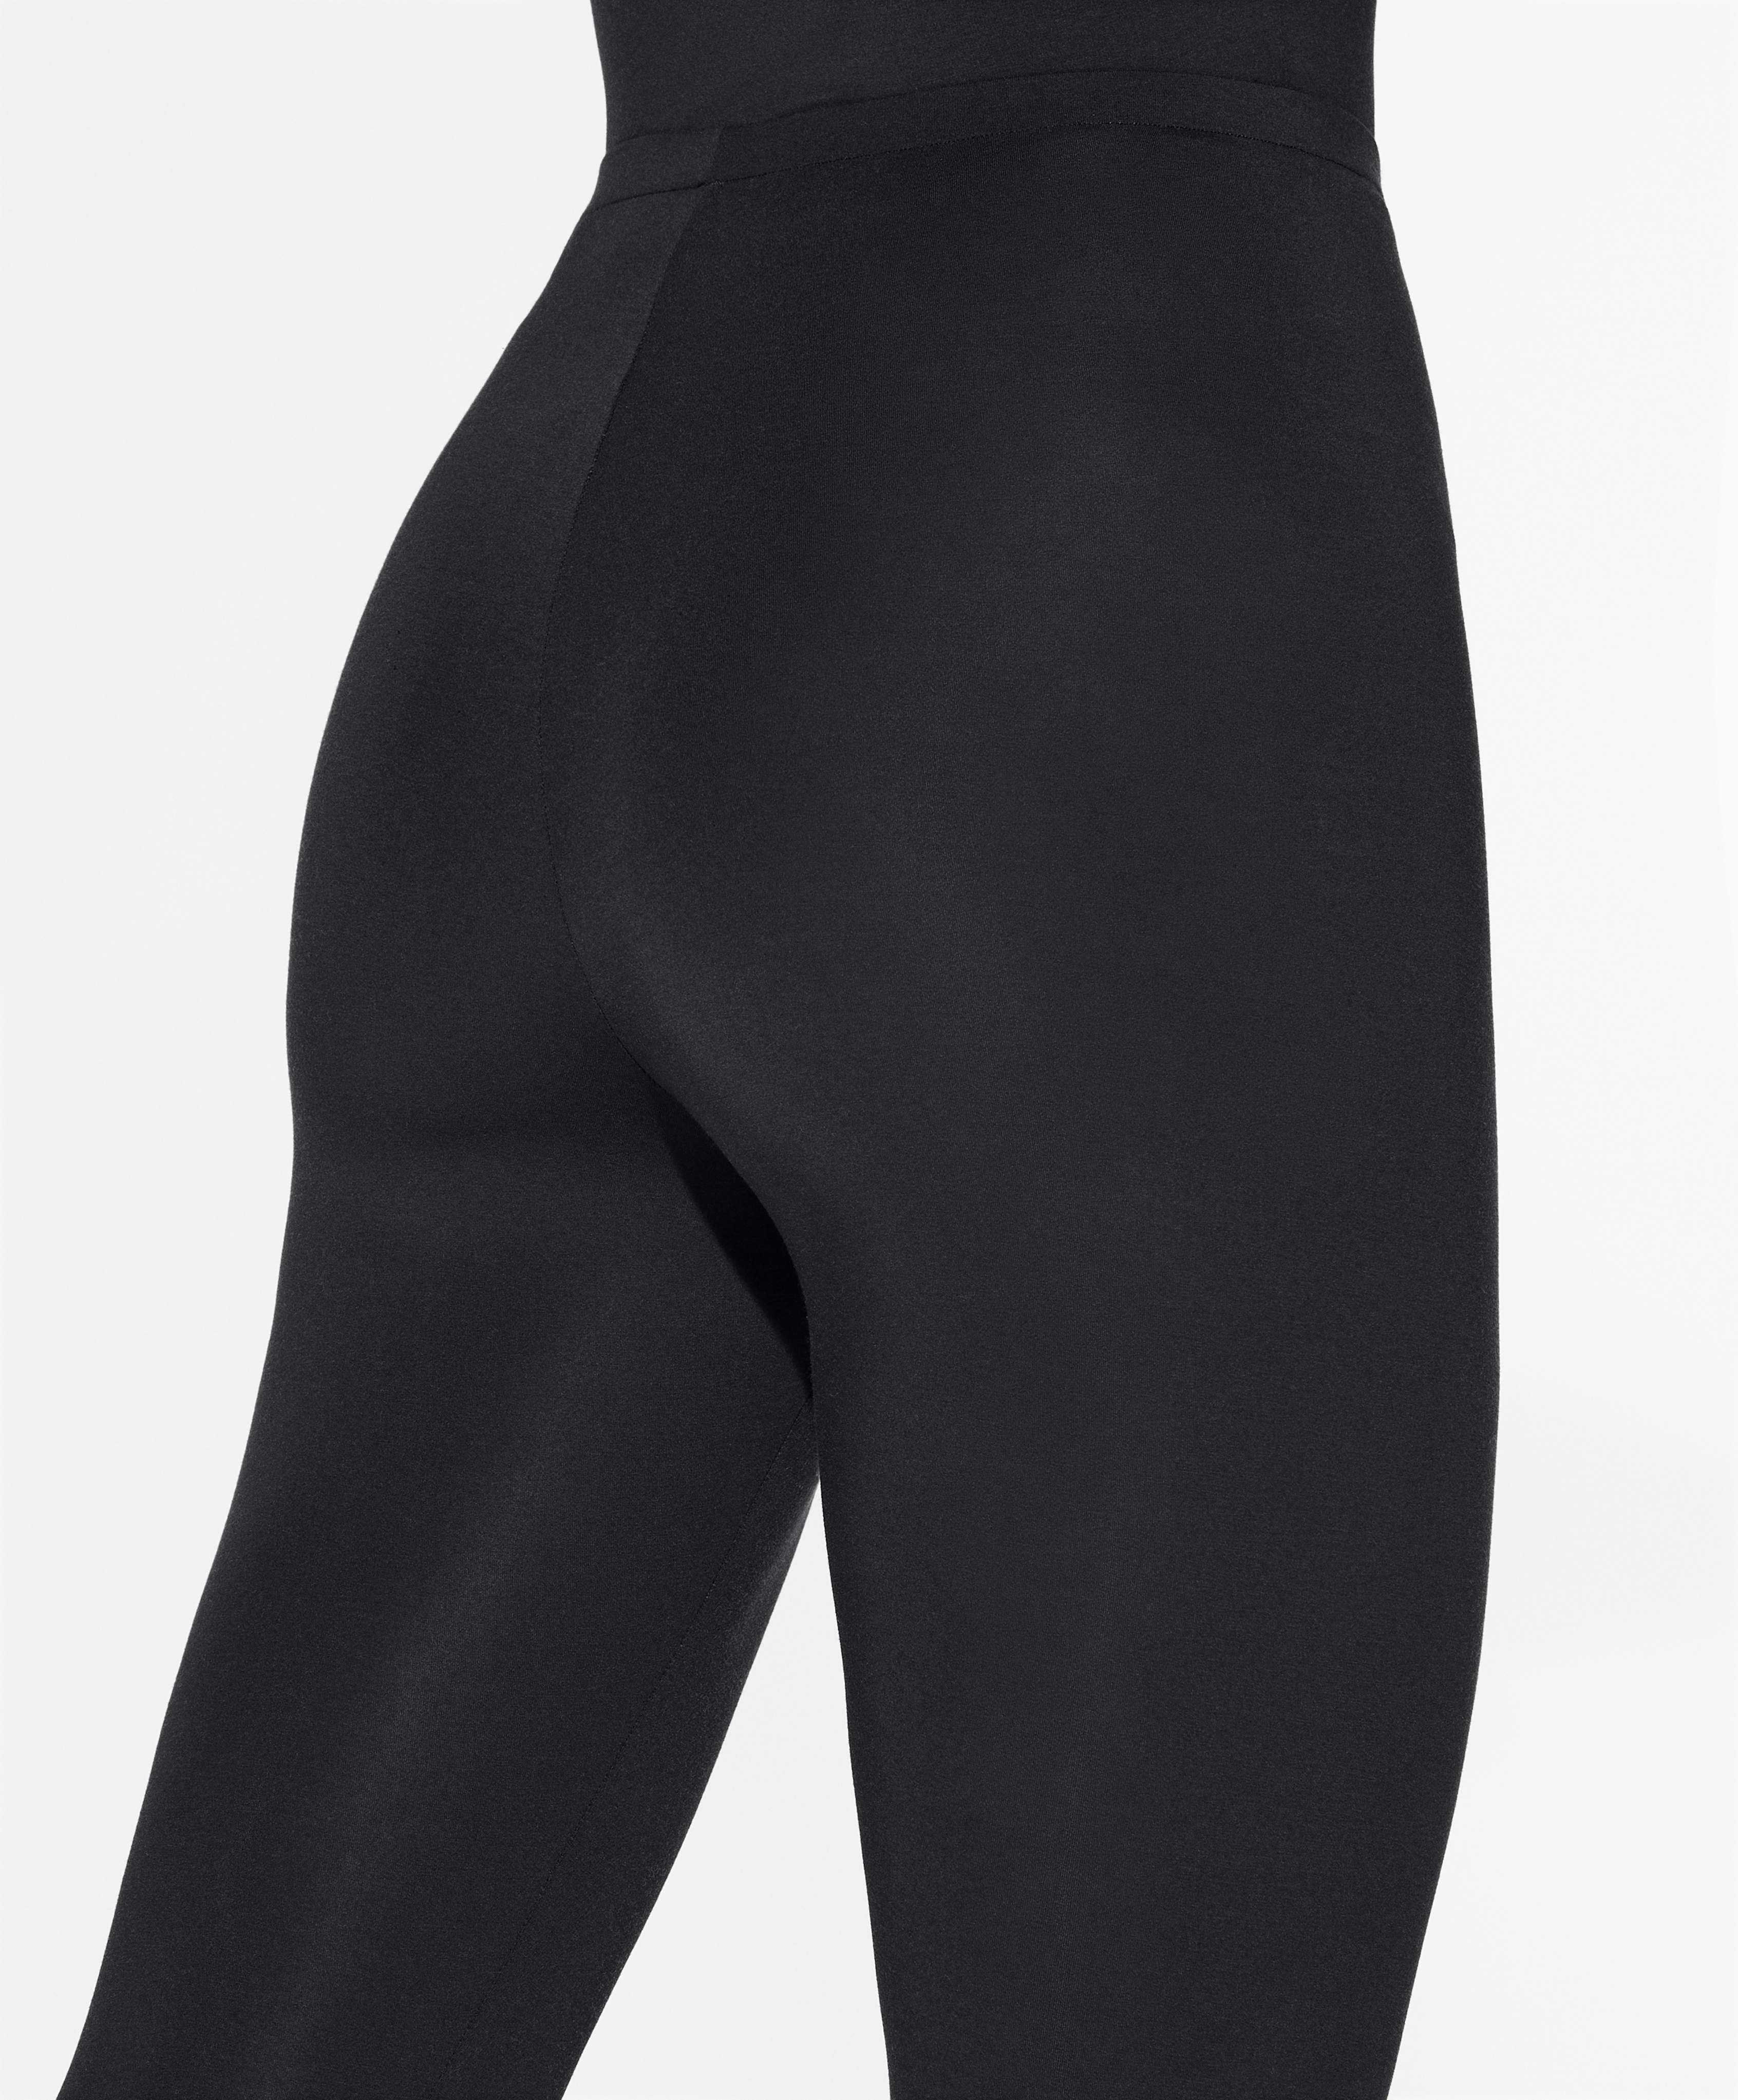 Paquete de 6 leggins de dama marca MADDISON precio unitario $120.00 ta –  Fashionmex